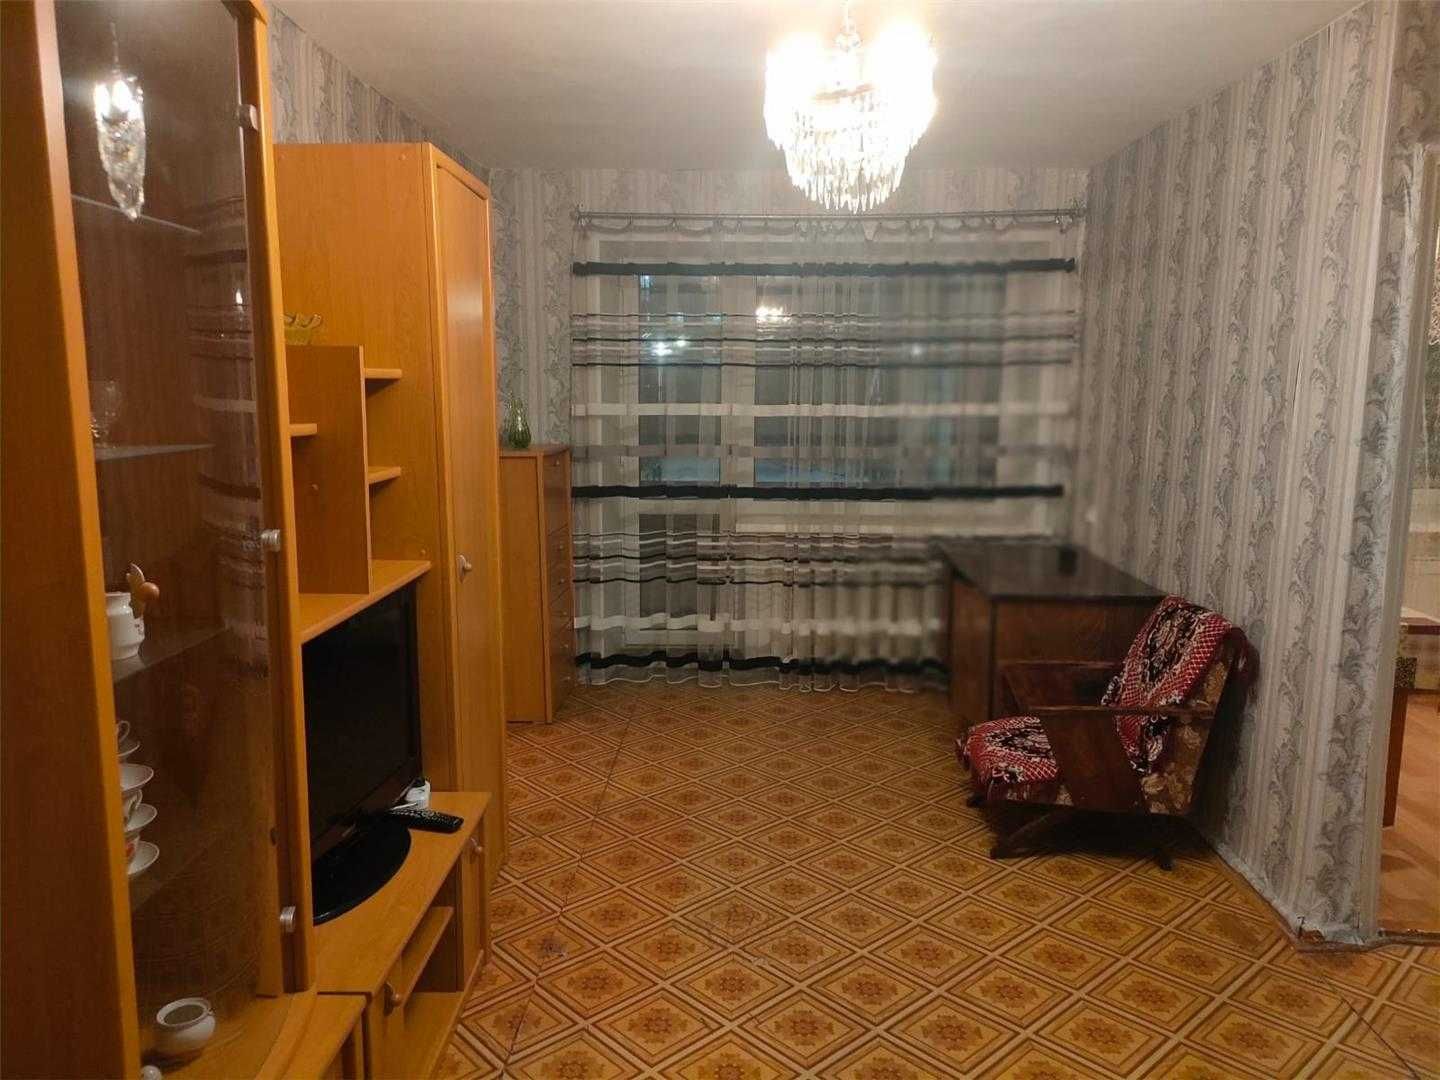 Продается 2-х  квартира в центре Сортировки. ПОМОЩЬ В ИПОТЕКЕ!